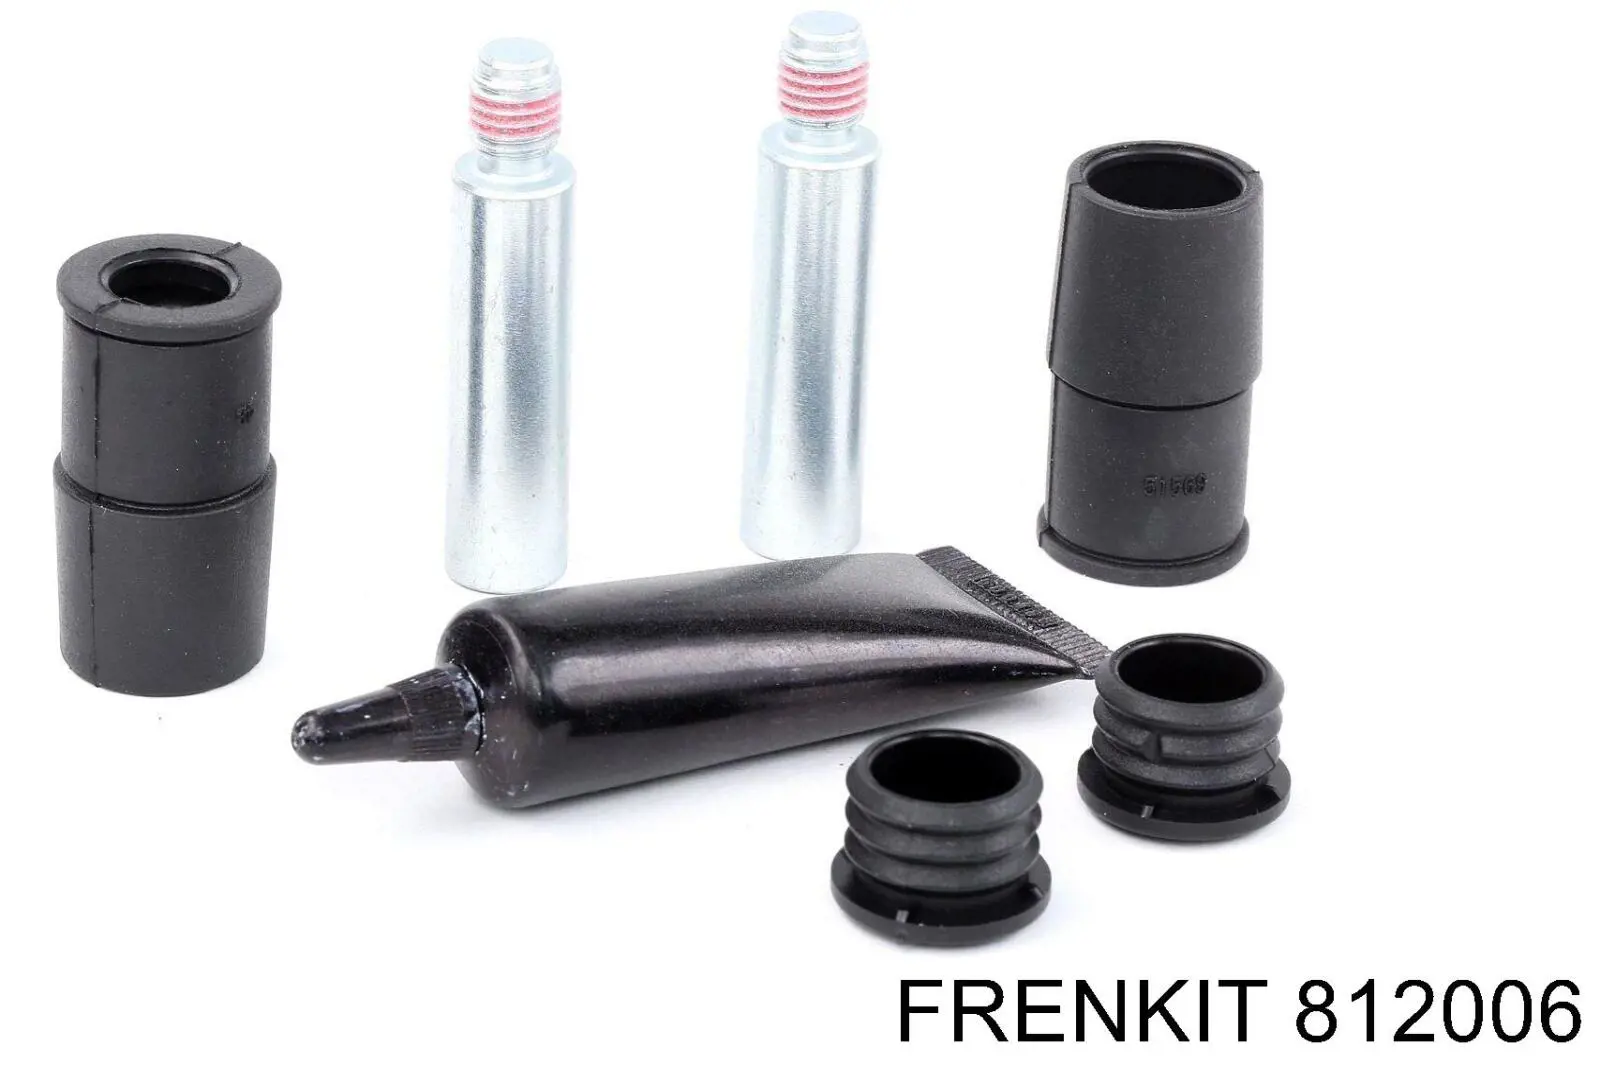 812006 Frenkit kit de reparação de suporte do freio dianteiro